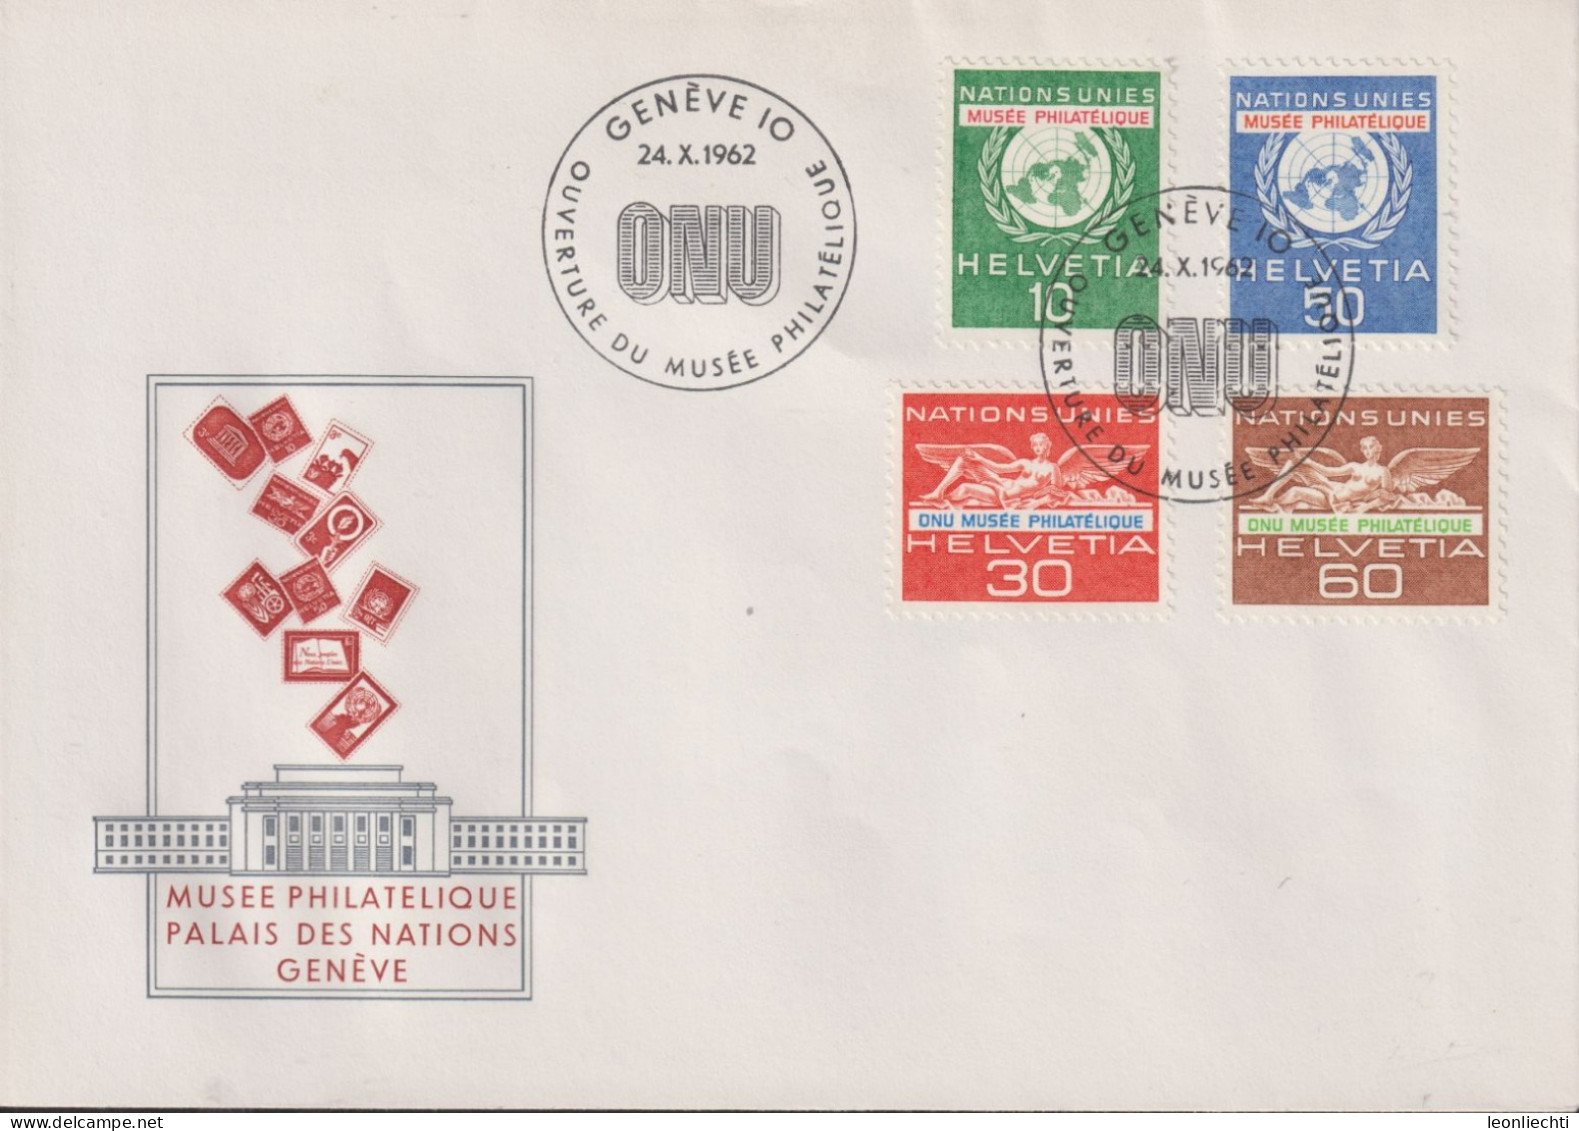 1962 Schweiz FDC, ONU, Zum:ONU 34-37, Mi:ONU 34-37,ⵙ GENÈVE OUVERTURE DU MUSÉE PHILATÉLIQUE - Lettres & Documents